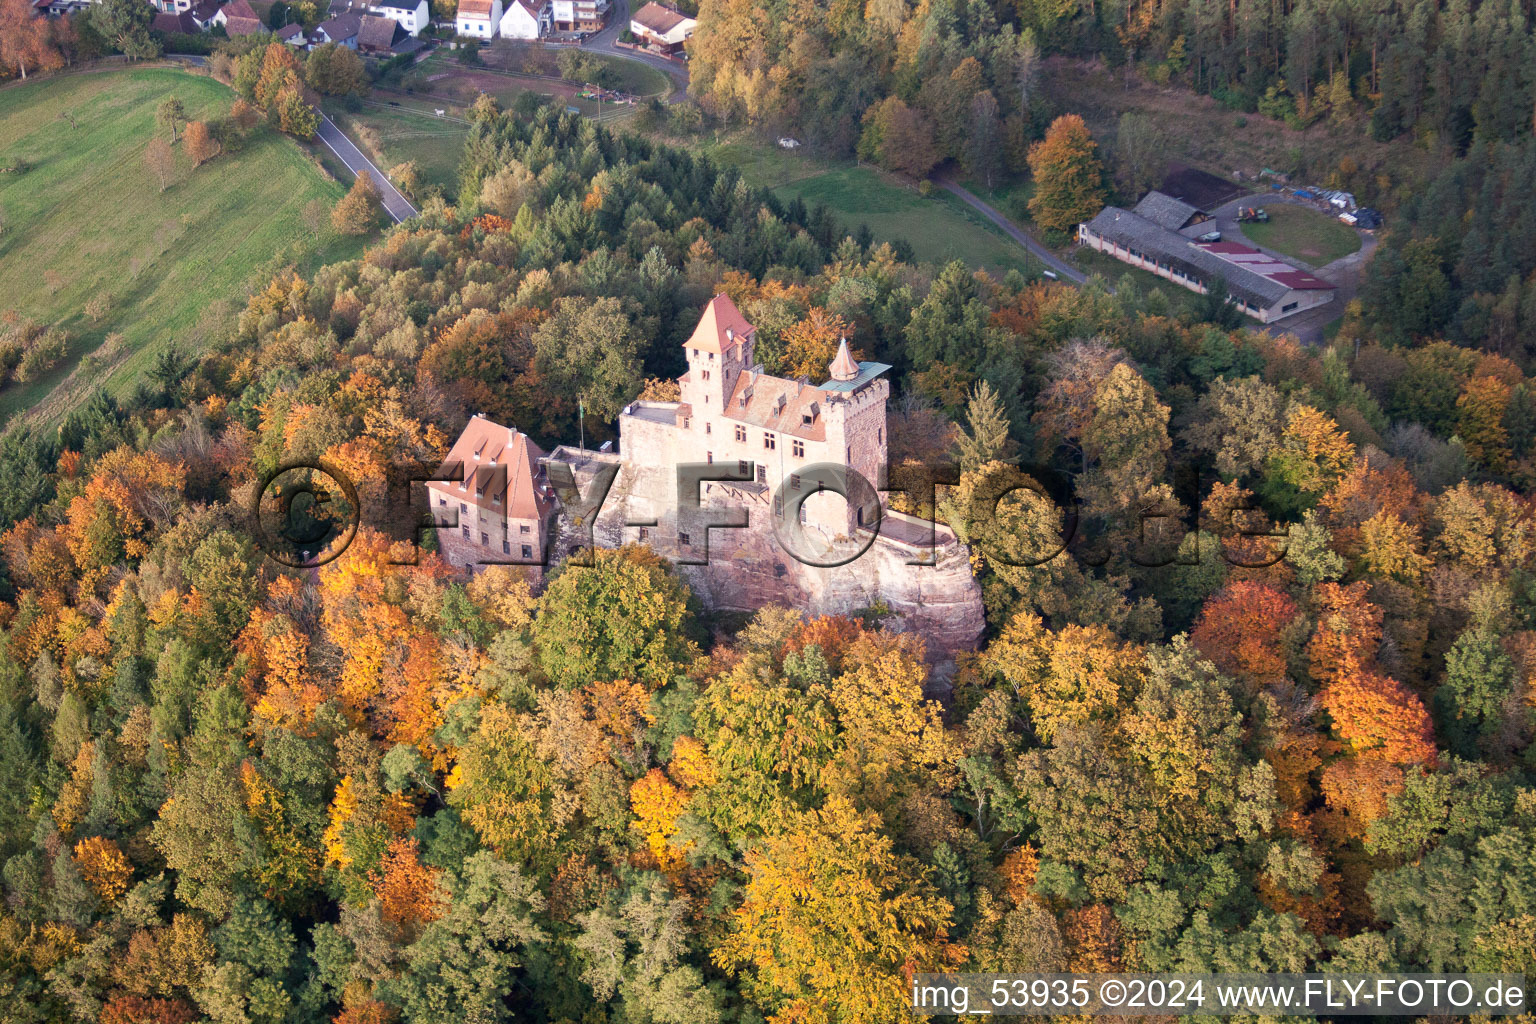 Luftbild von Ruine und Mauerreste der ehemaligen Burganlage und Feste Burg Berwartstein in Erlenbach bei Dahn im Bundesland Rheinland-Pfalz, Deutschland